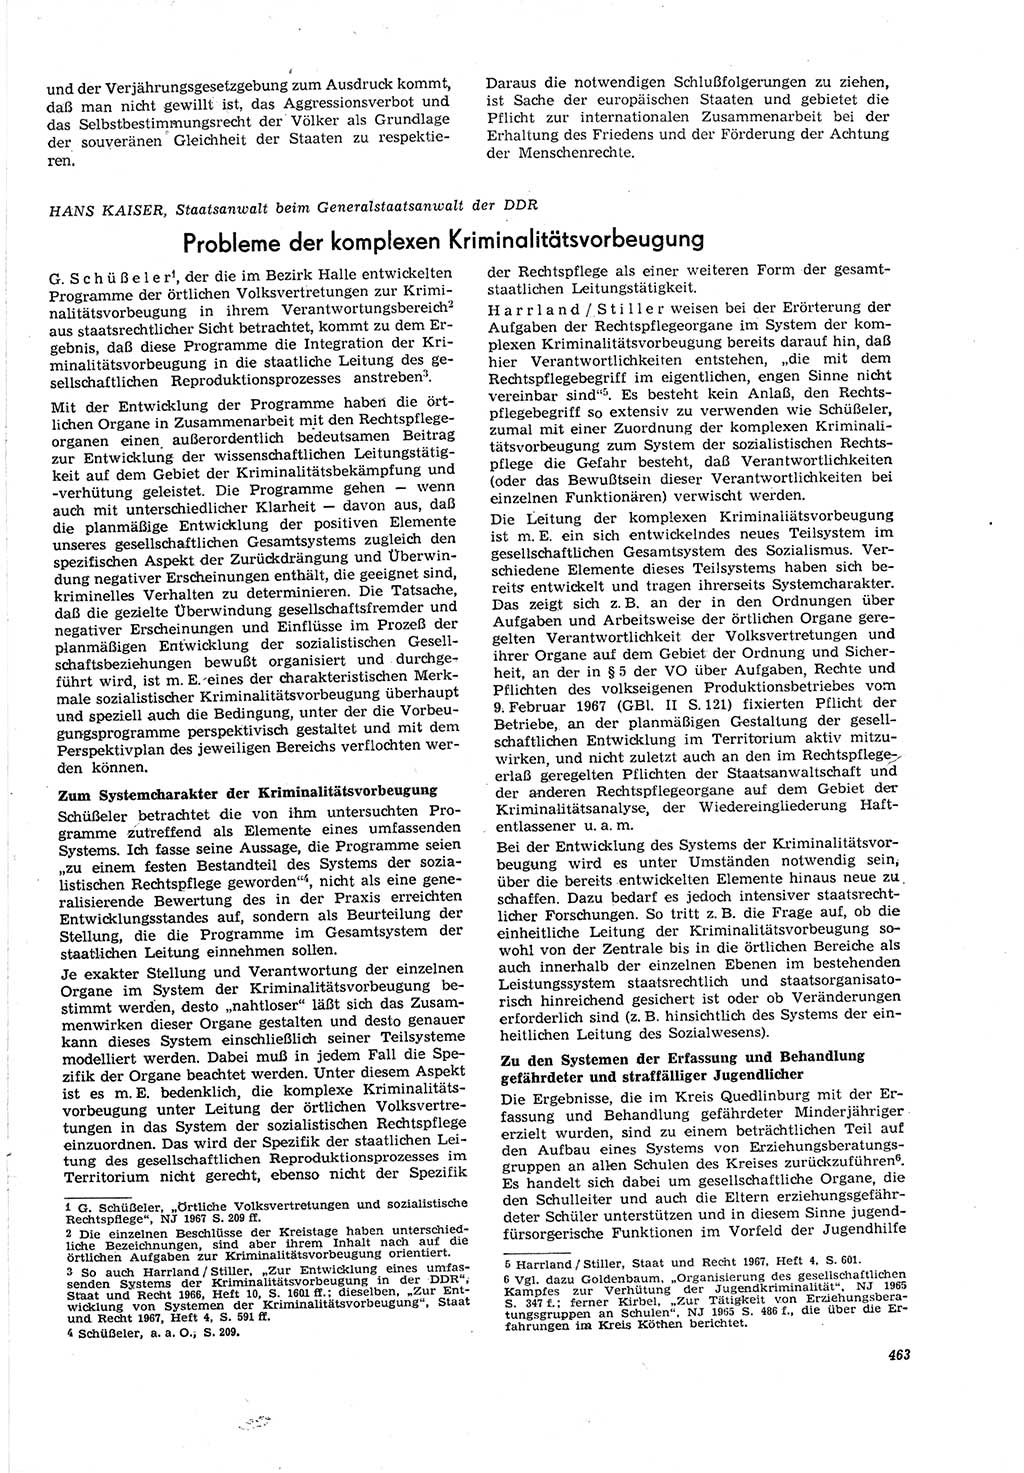 Neue Justiz (NJ), Zeitschrift für Recht und Rechtswissenschaft [Deutsche Demokratische Republik (DDR)], 21. Jahrgang 1967, Seite 463 (NJ DDR 1967, S. 463)